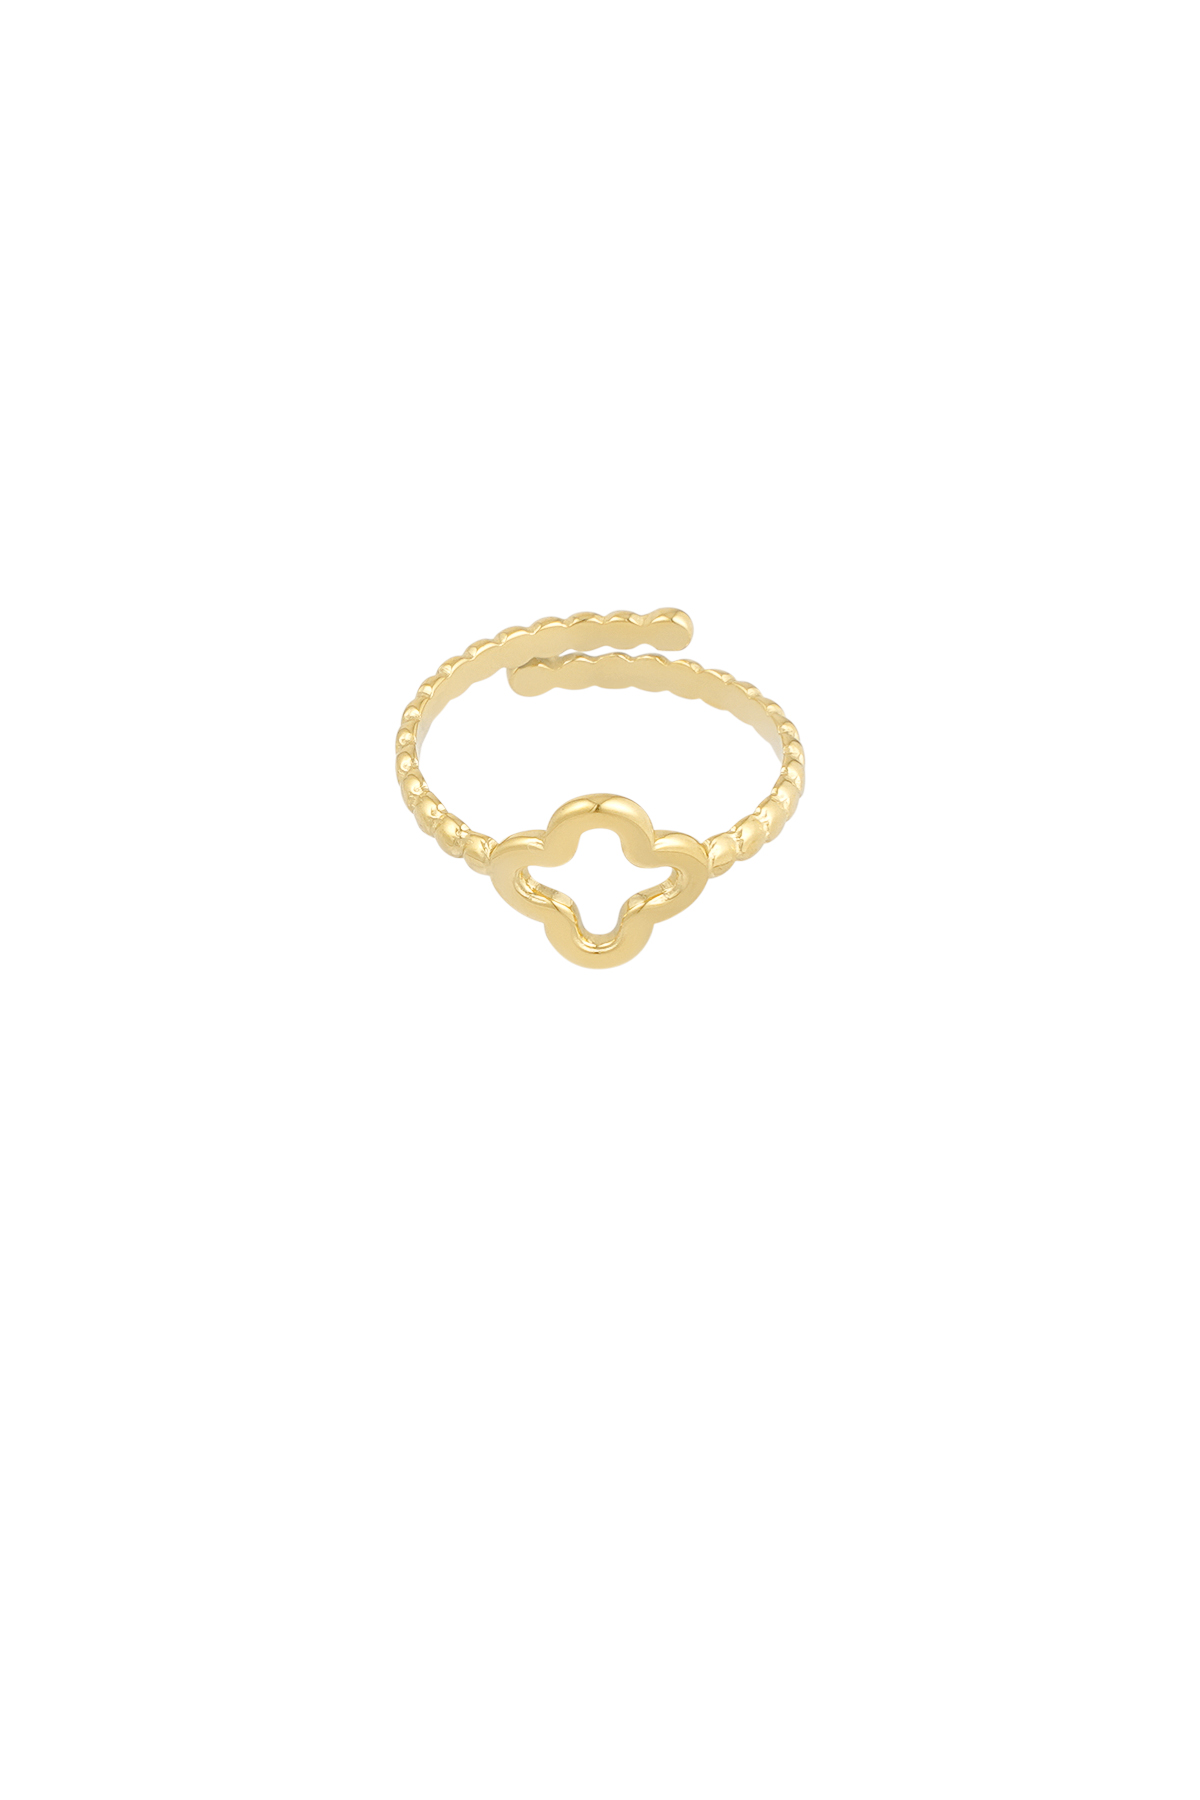 Gedrehter Ring mit Kleeblatt - gold  Bild3